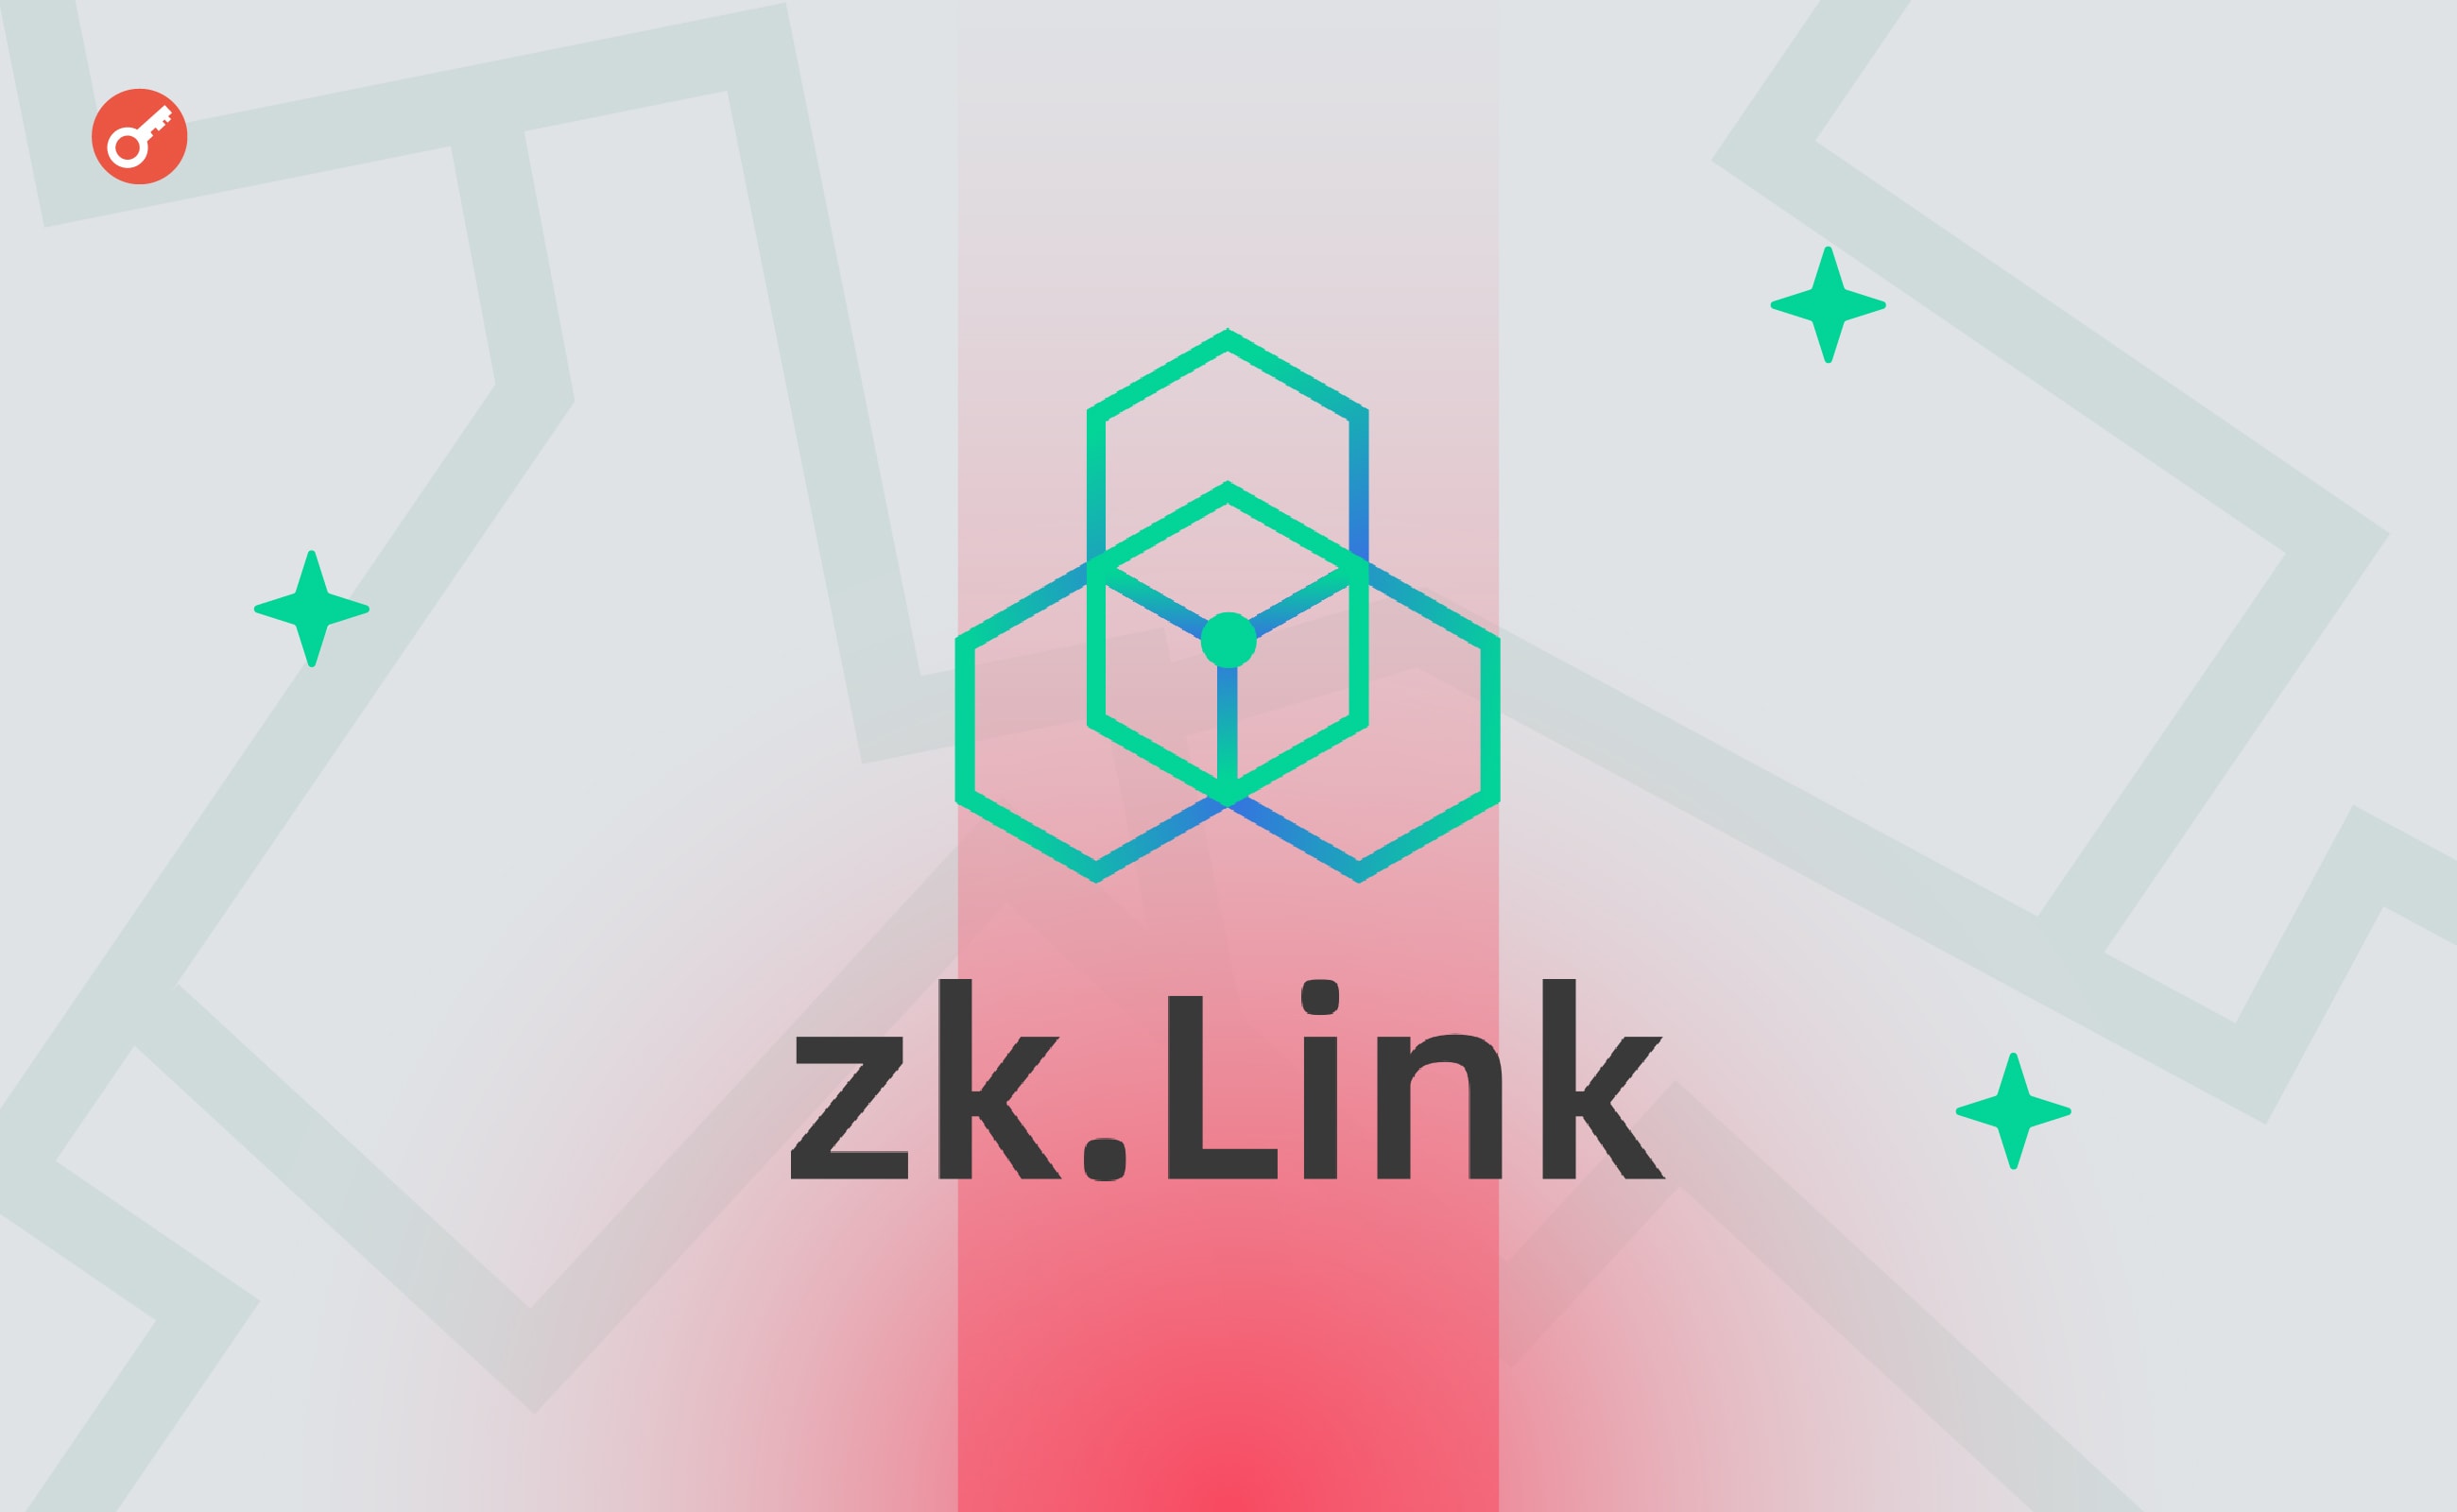 zkLink оголосила про запуск публічного мейннету Nova. Головний колаж новини.